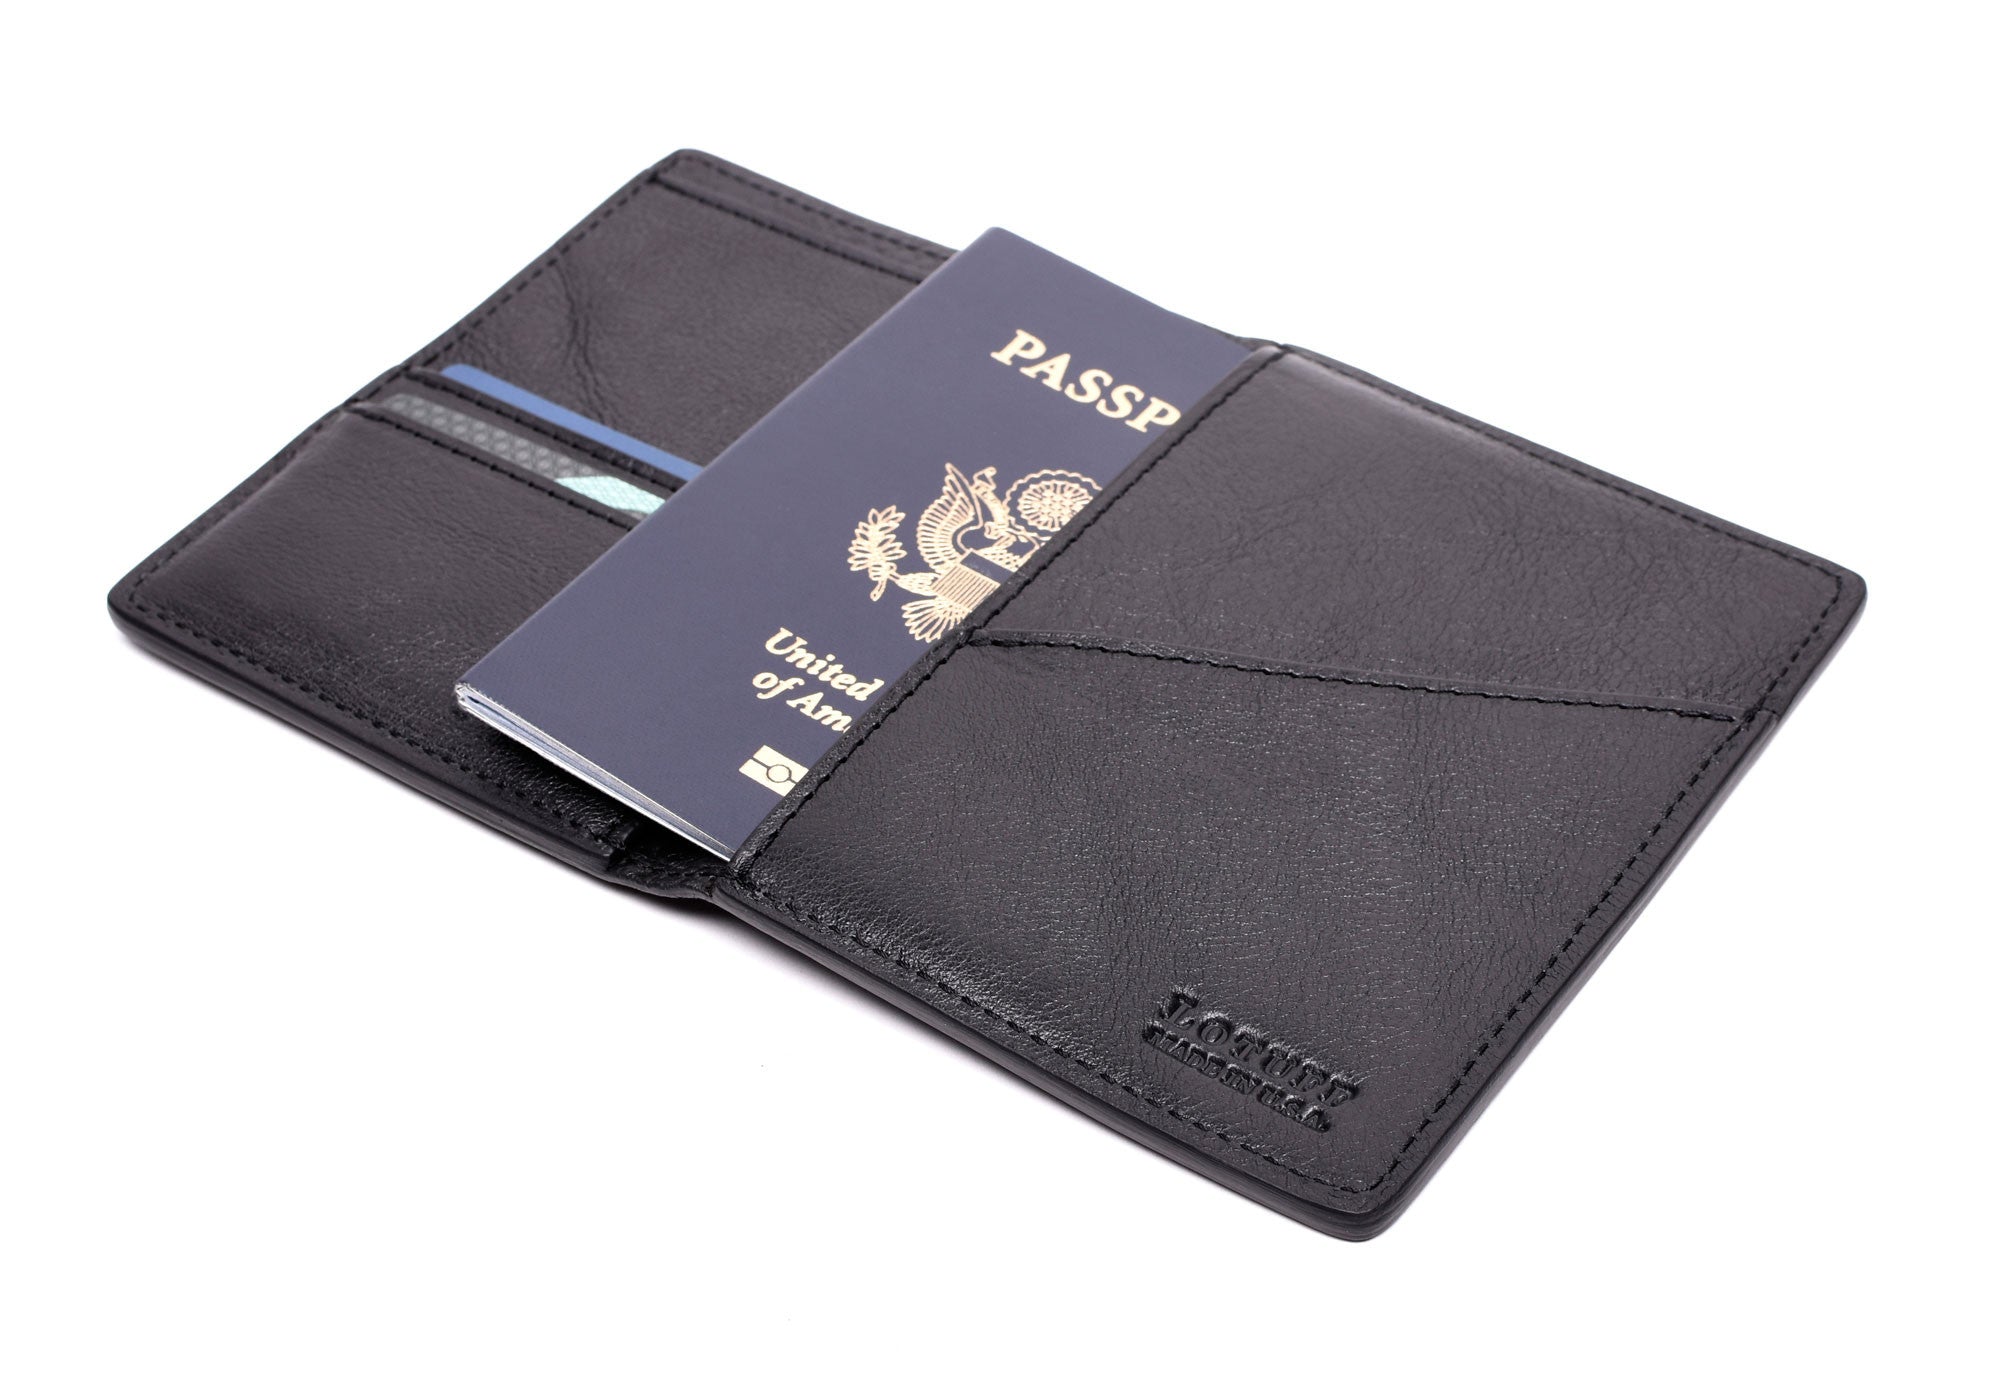 The Passport Wallet Black